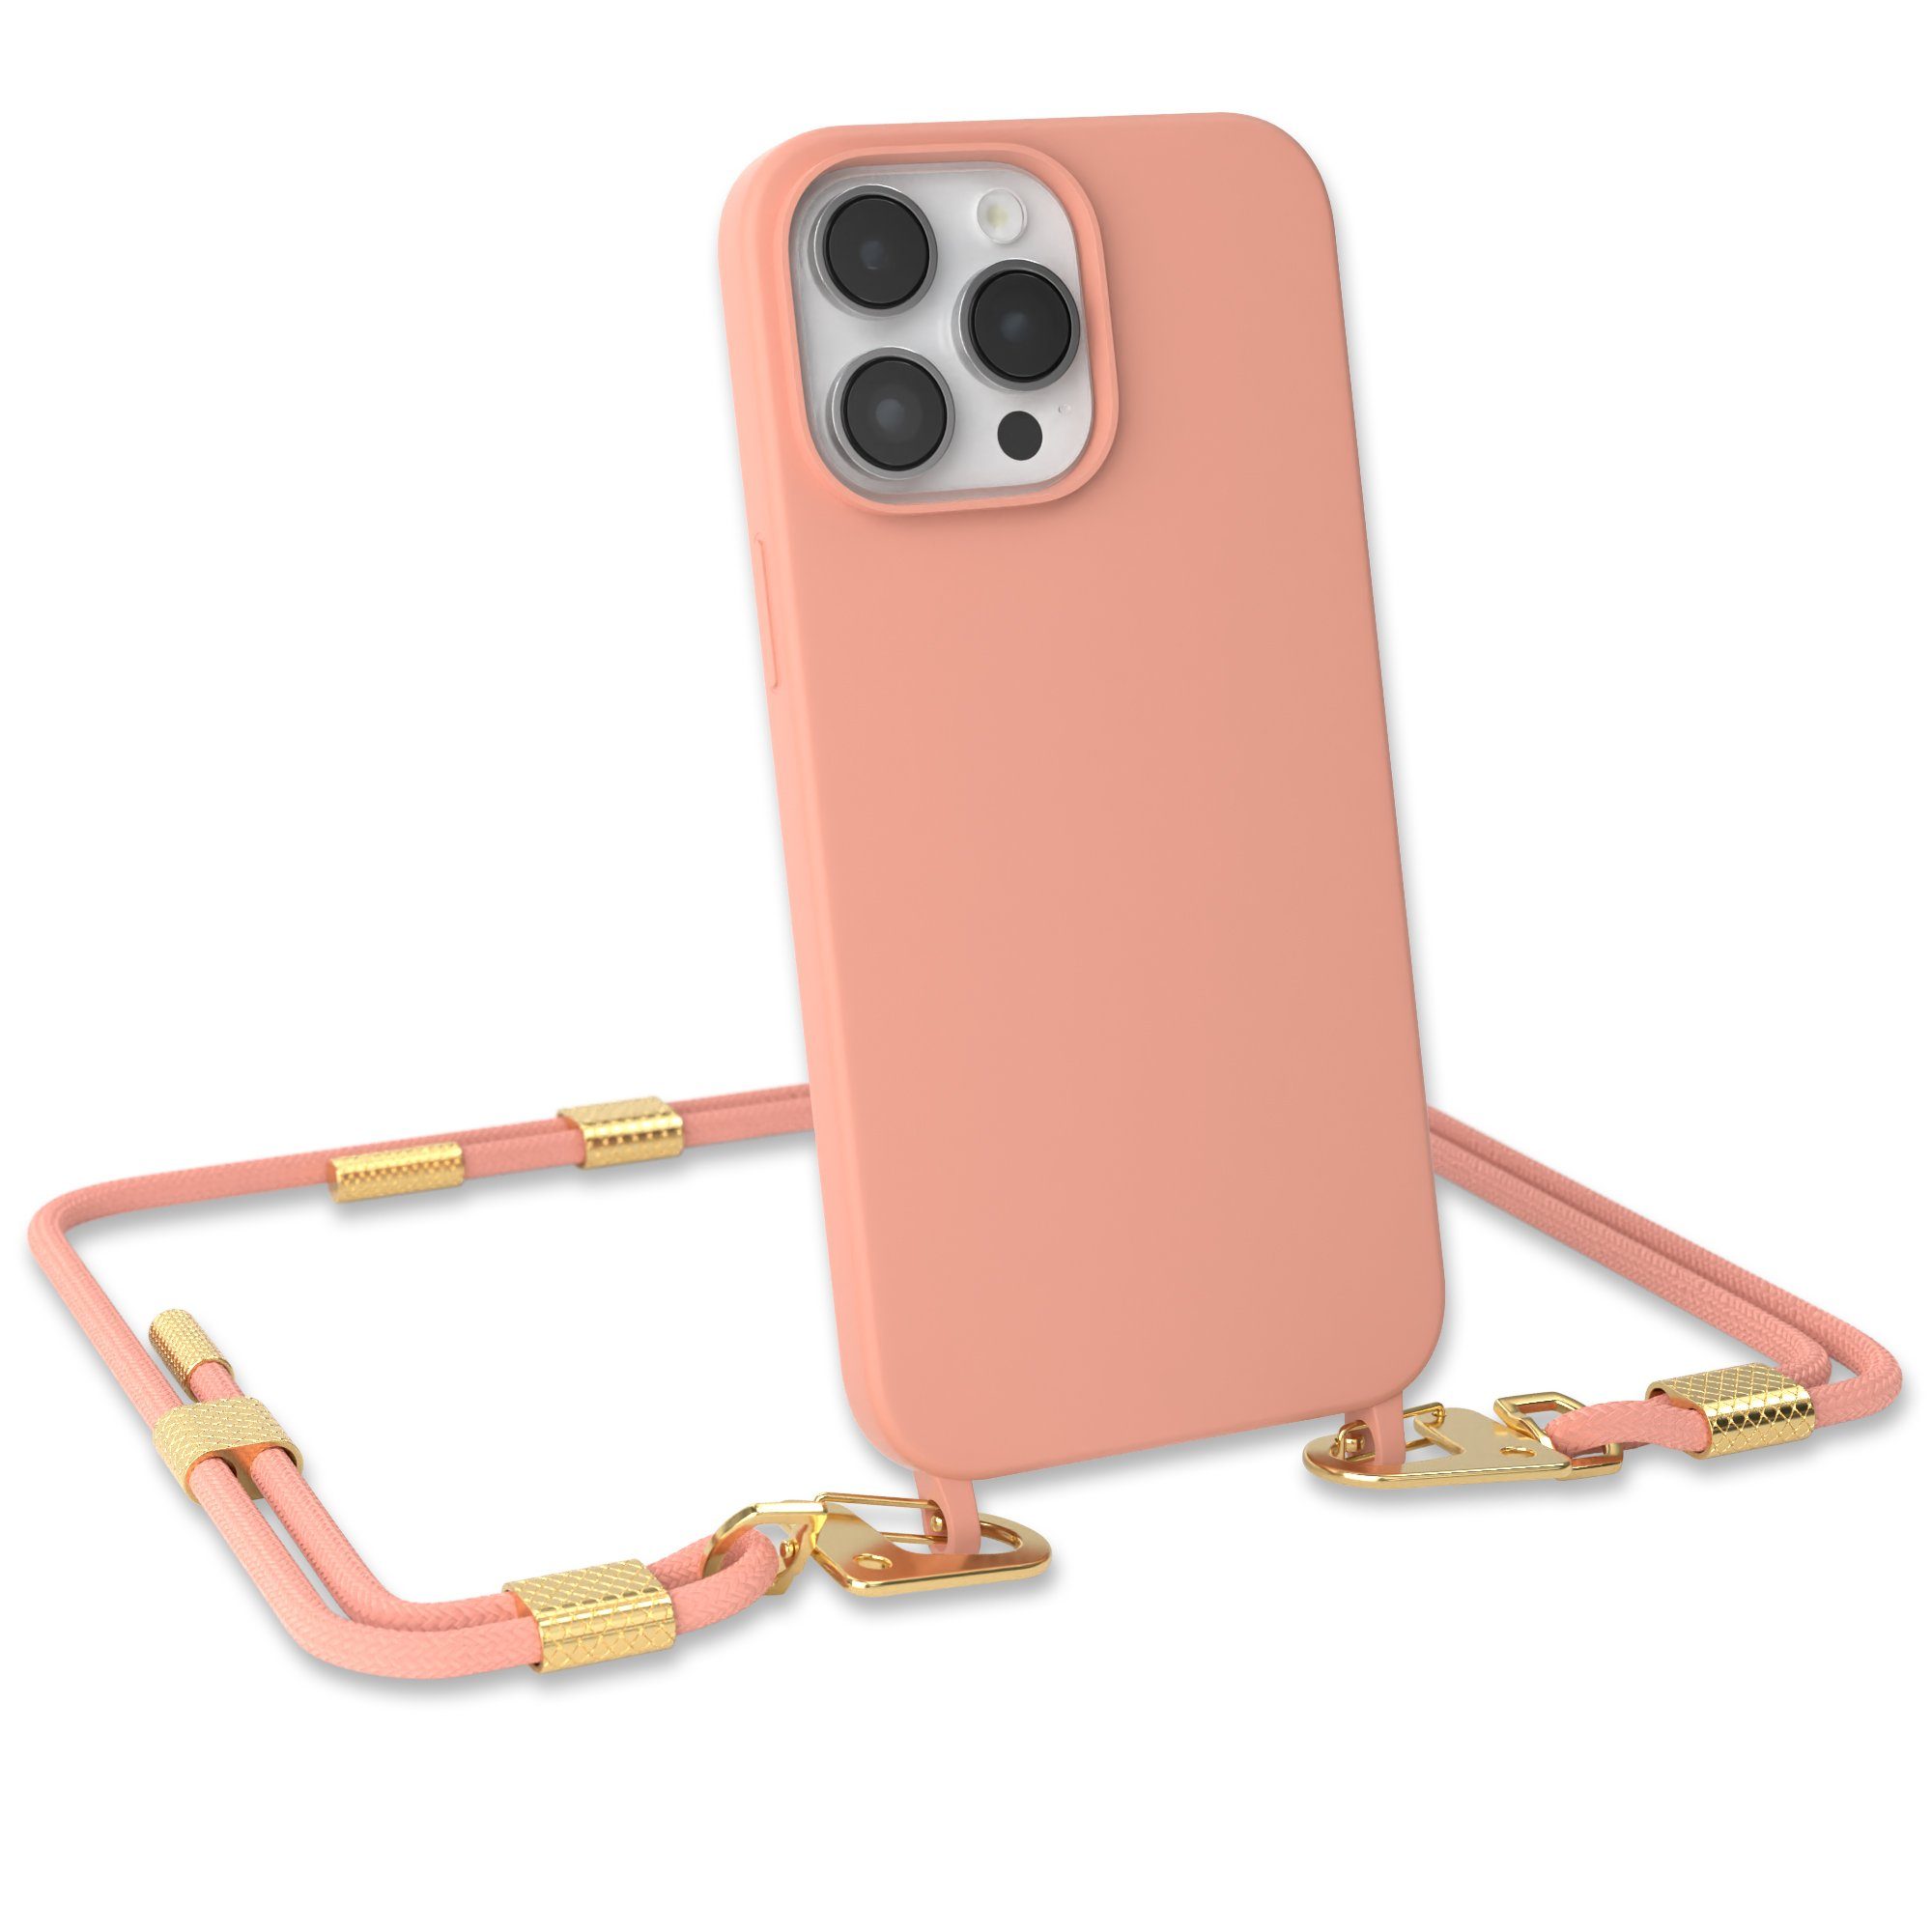 EAZY CASE Handykette Carabiner Chain für Apple iPhone 14 Pro Max 6,7 Zoll, 2 in 1 Handytasche farbige Silikon Hülle mit Umhängeband Altrosa Coral